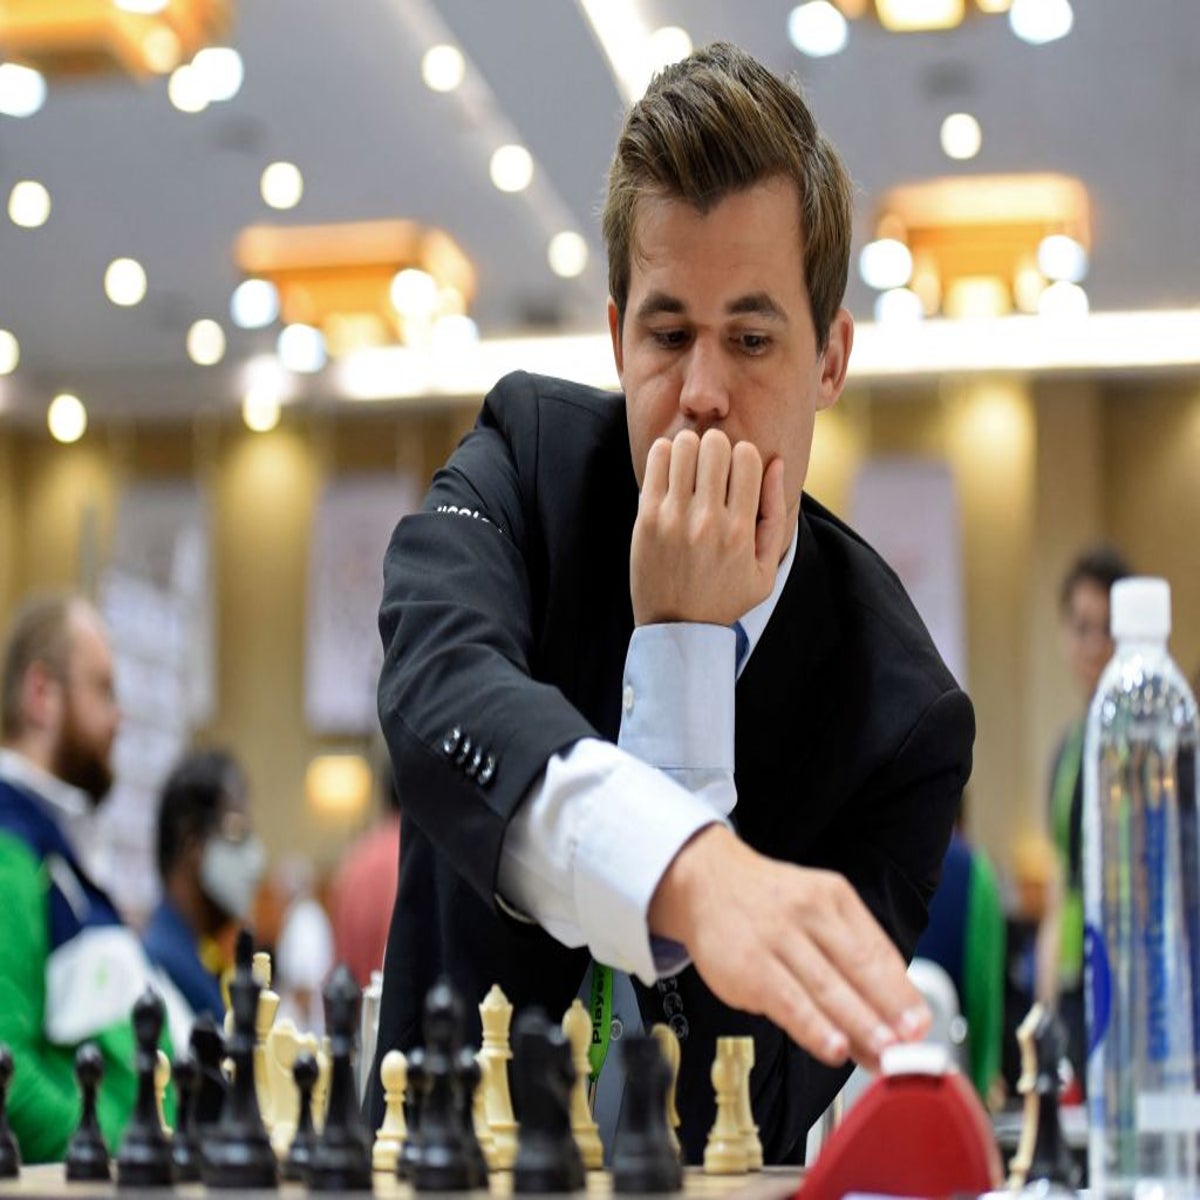 Chess Grandmaster Hans Niemann Denies 'Ridiculous' Cheating Claims